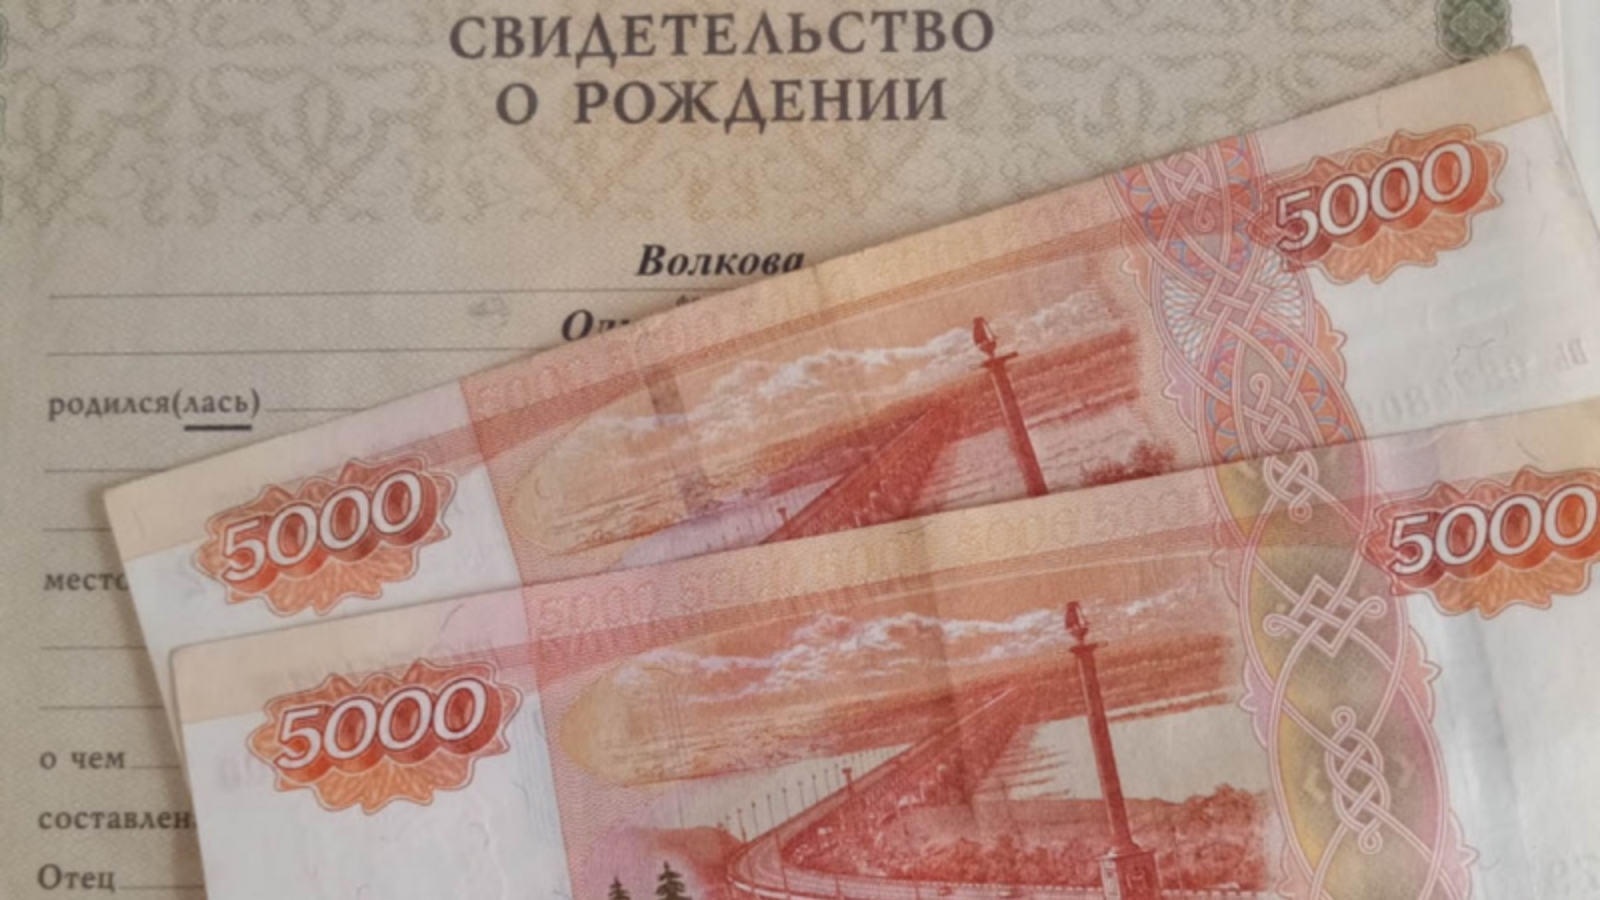 10 тыс нравится. Выплата 10 тысяч рублей. Пособие 10 тысяч рублей на ребенка. Выплаты по 10 тыс на детей. Выплата 10000 рублей на детей.